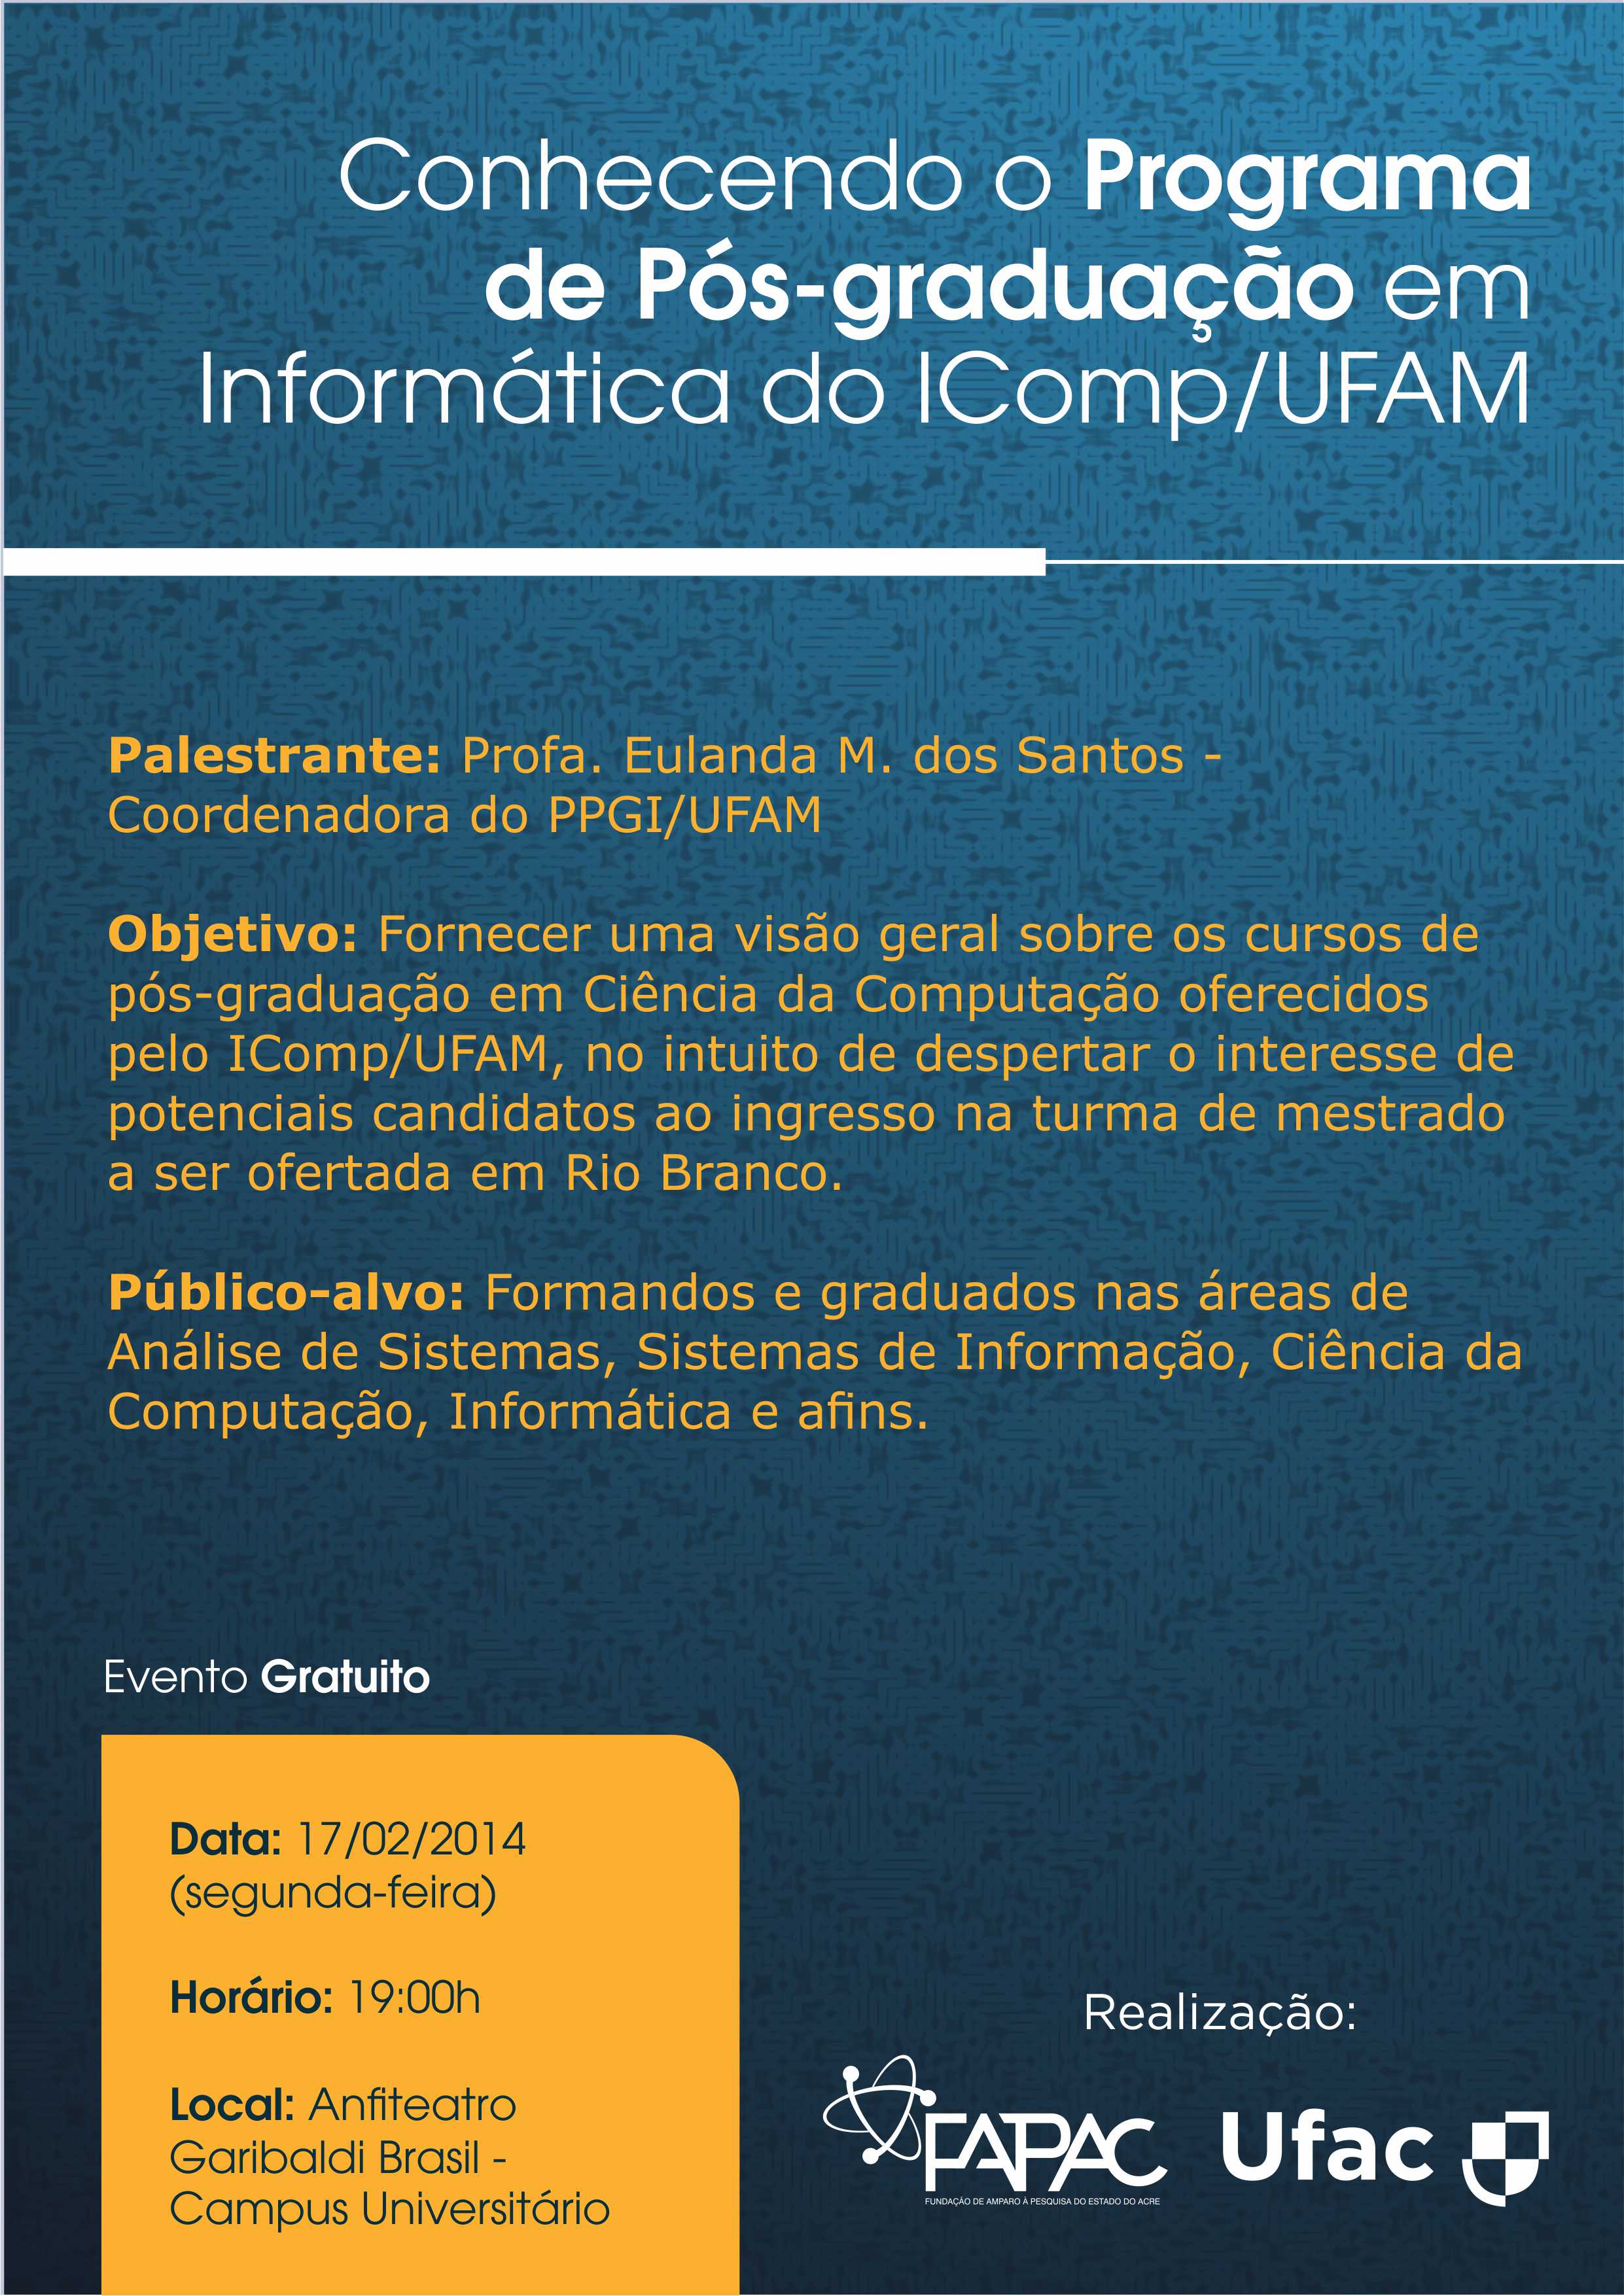 Conhecendo o Programa de Pós-graduação em Informática do IComp/UFAM